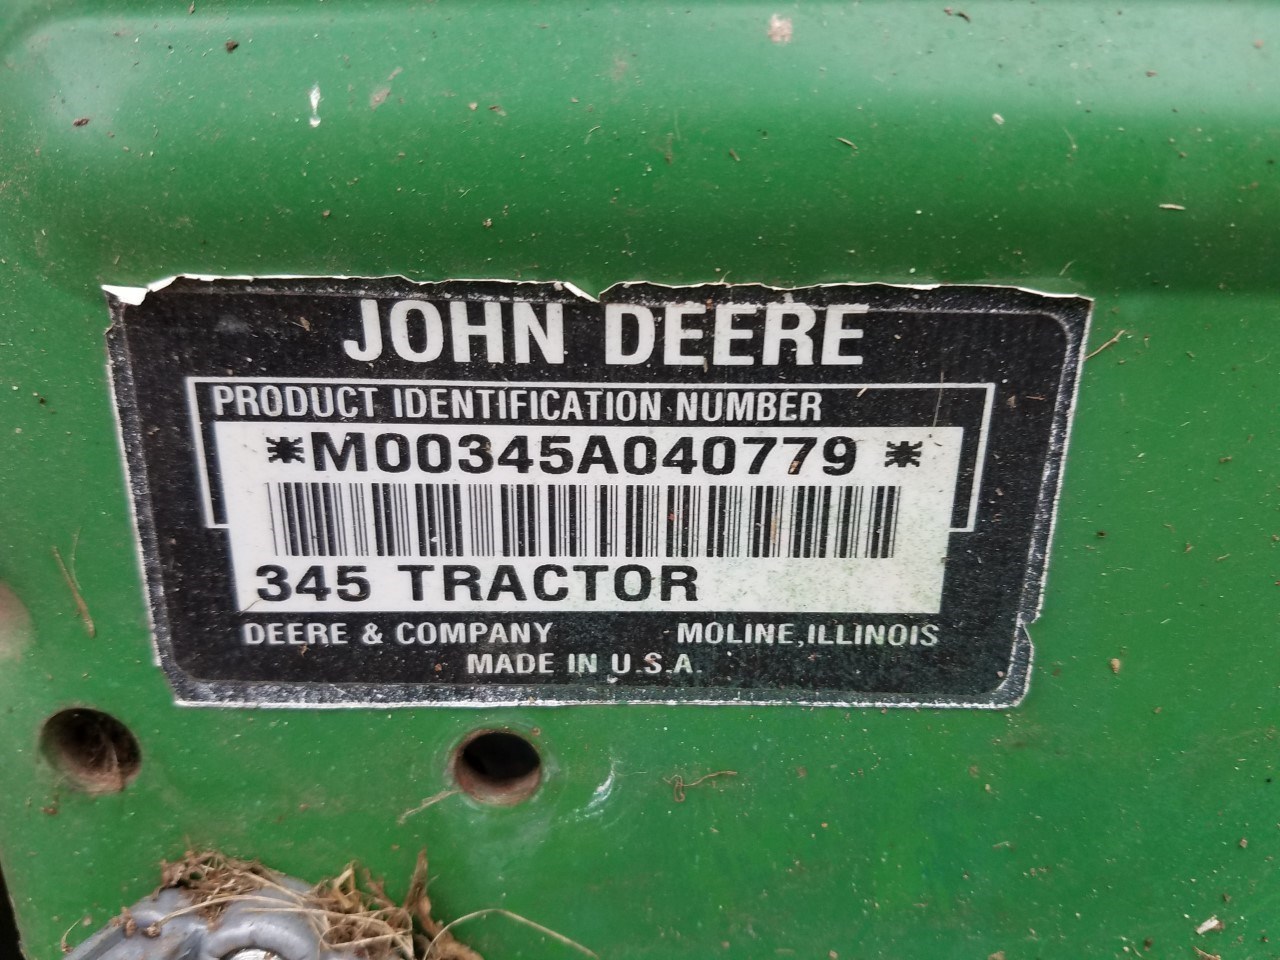 1996 John Deere 345 Lawn Mower For Sale